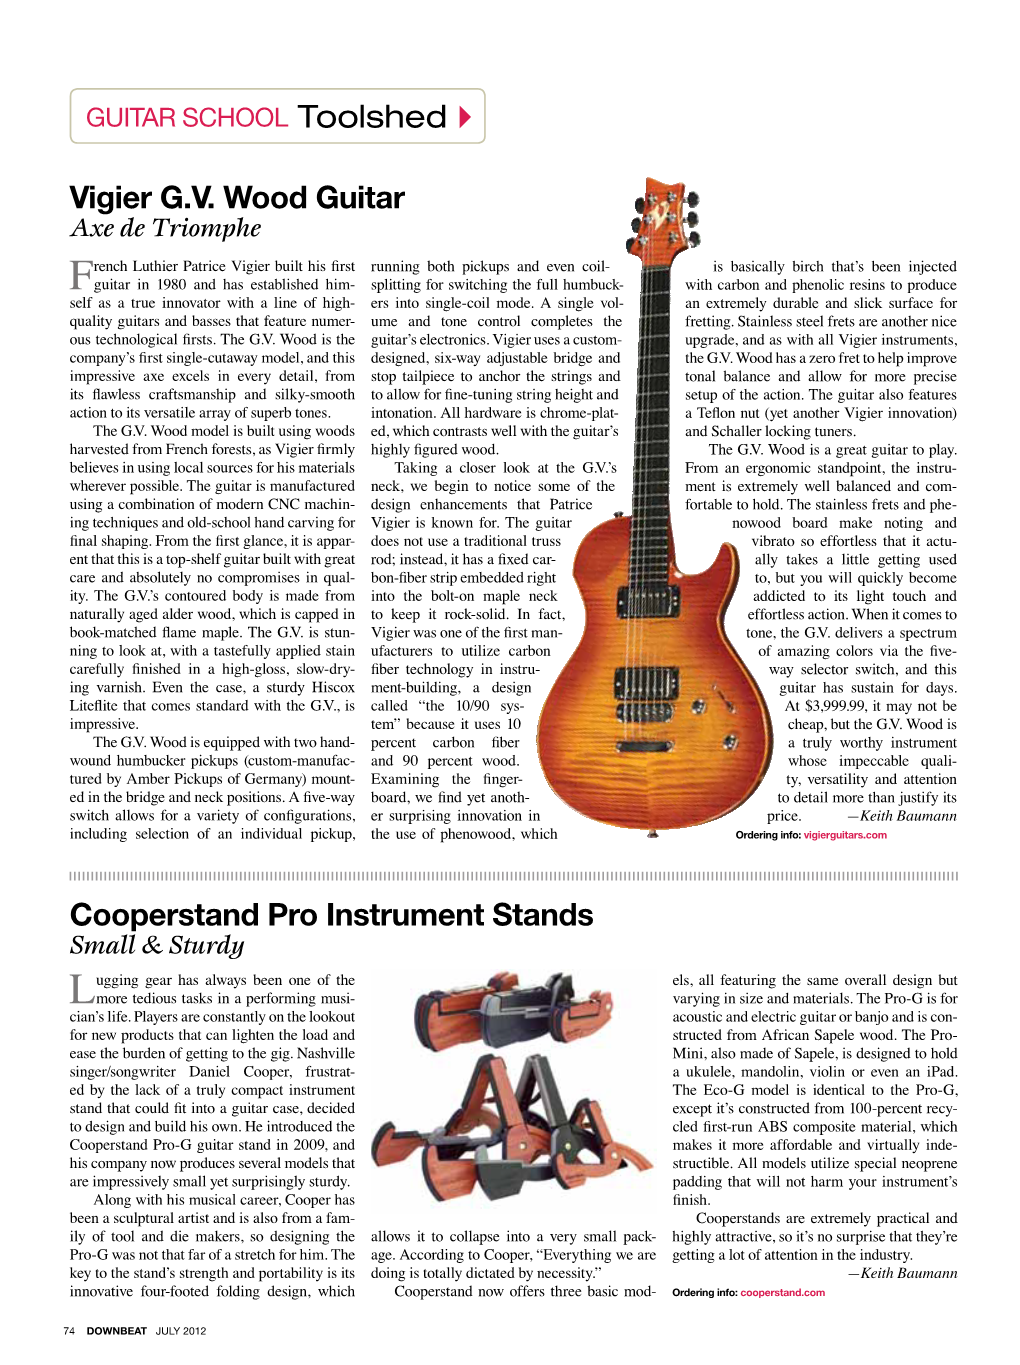 Cooperstand Pro Instrument Stands Vigier G.V. Wood Guitar